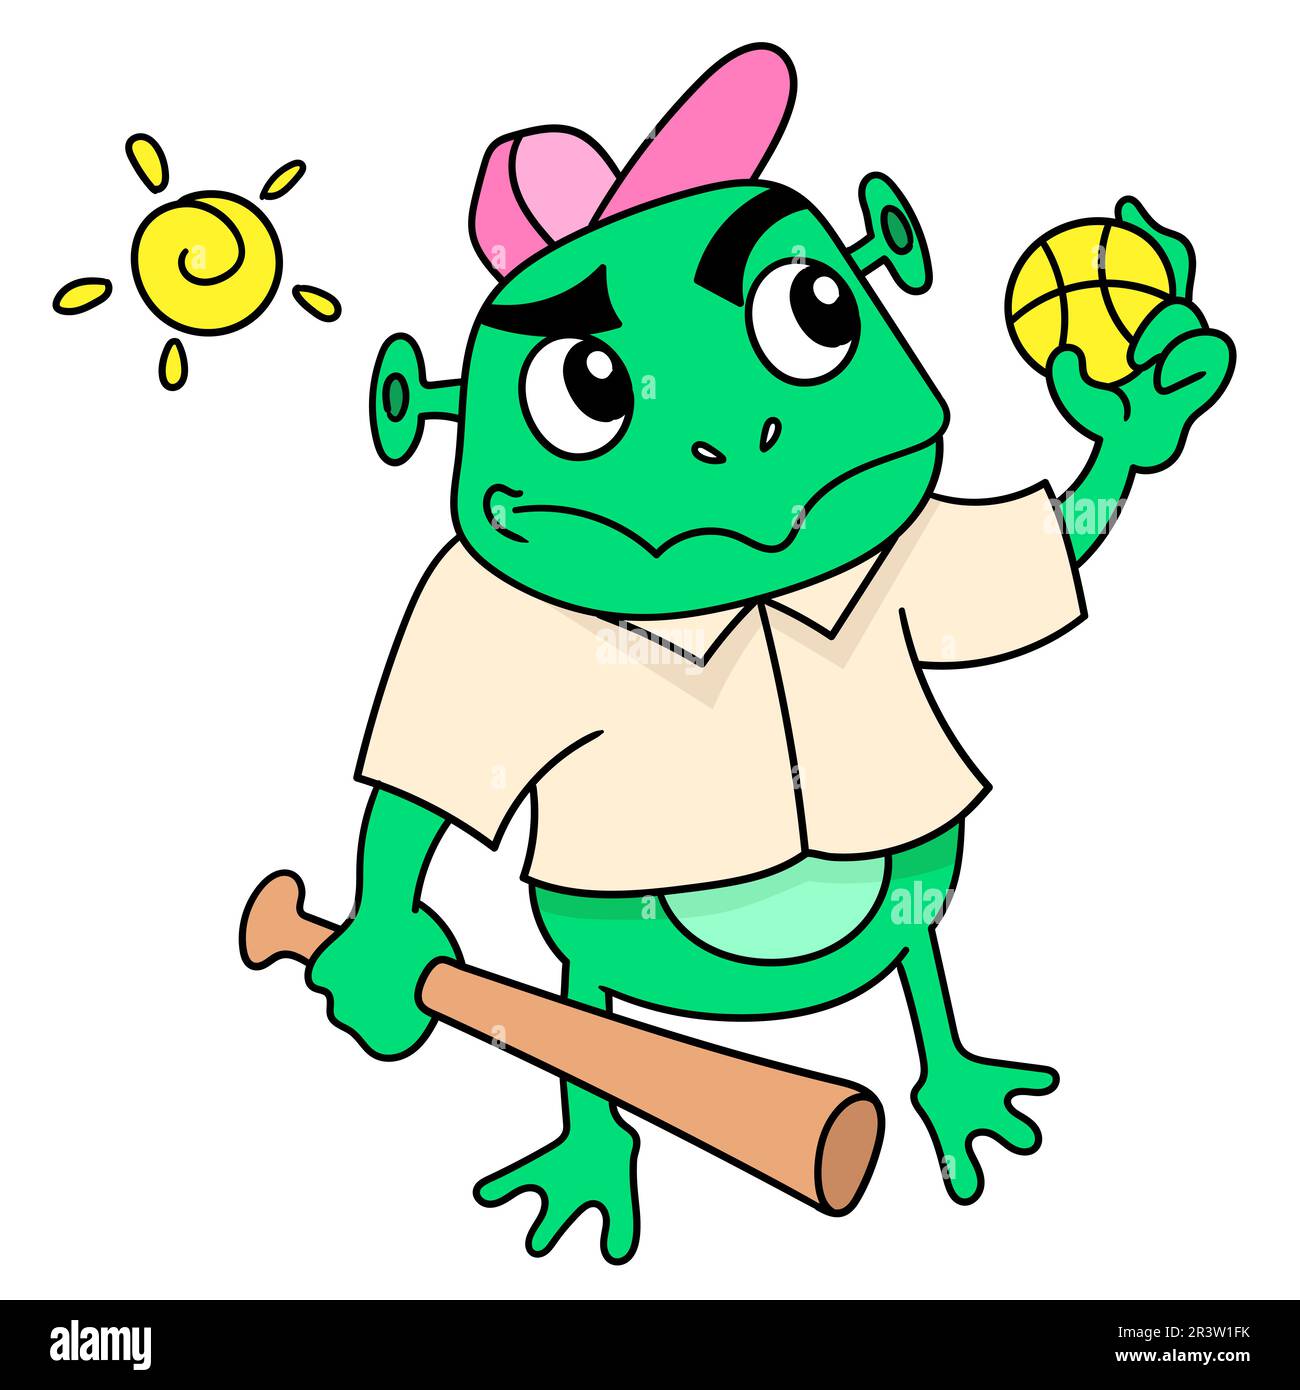 Les grenouilles portent des balles et des bâtons pour jouer au baseball, l'icône de doodle image kawaii Banque D'Images